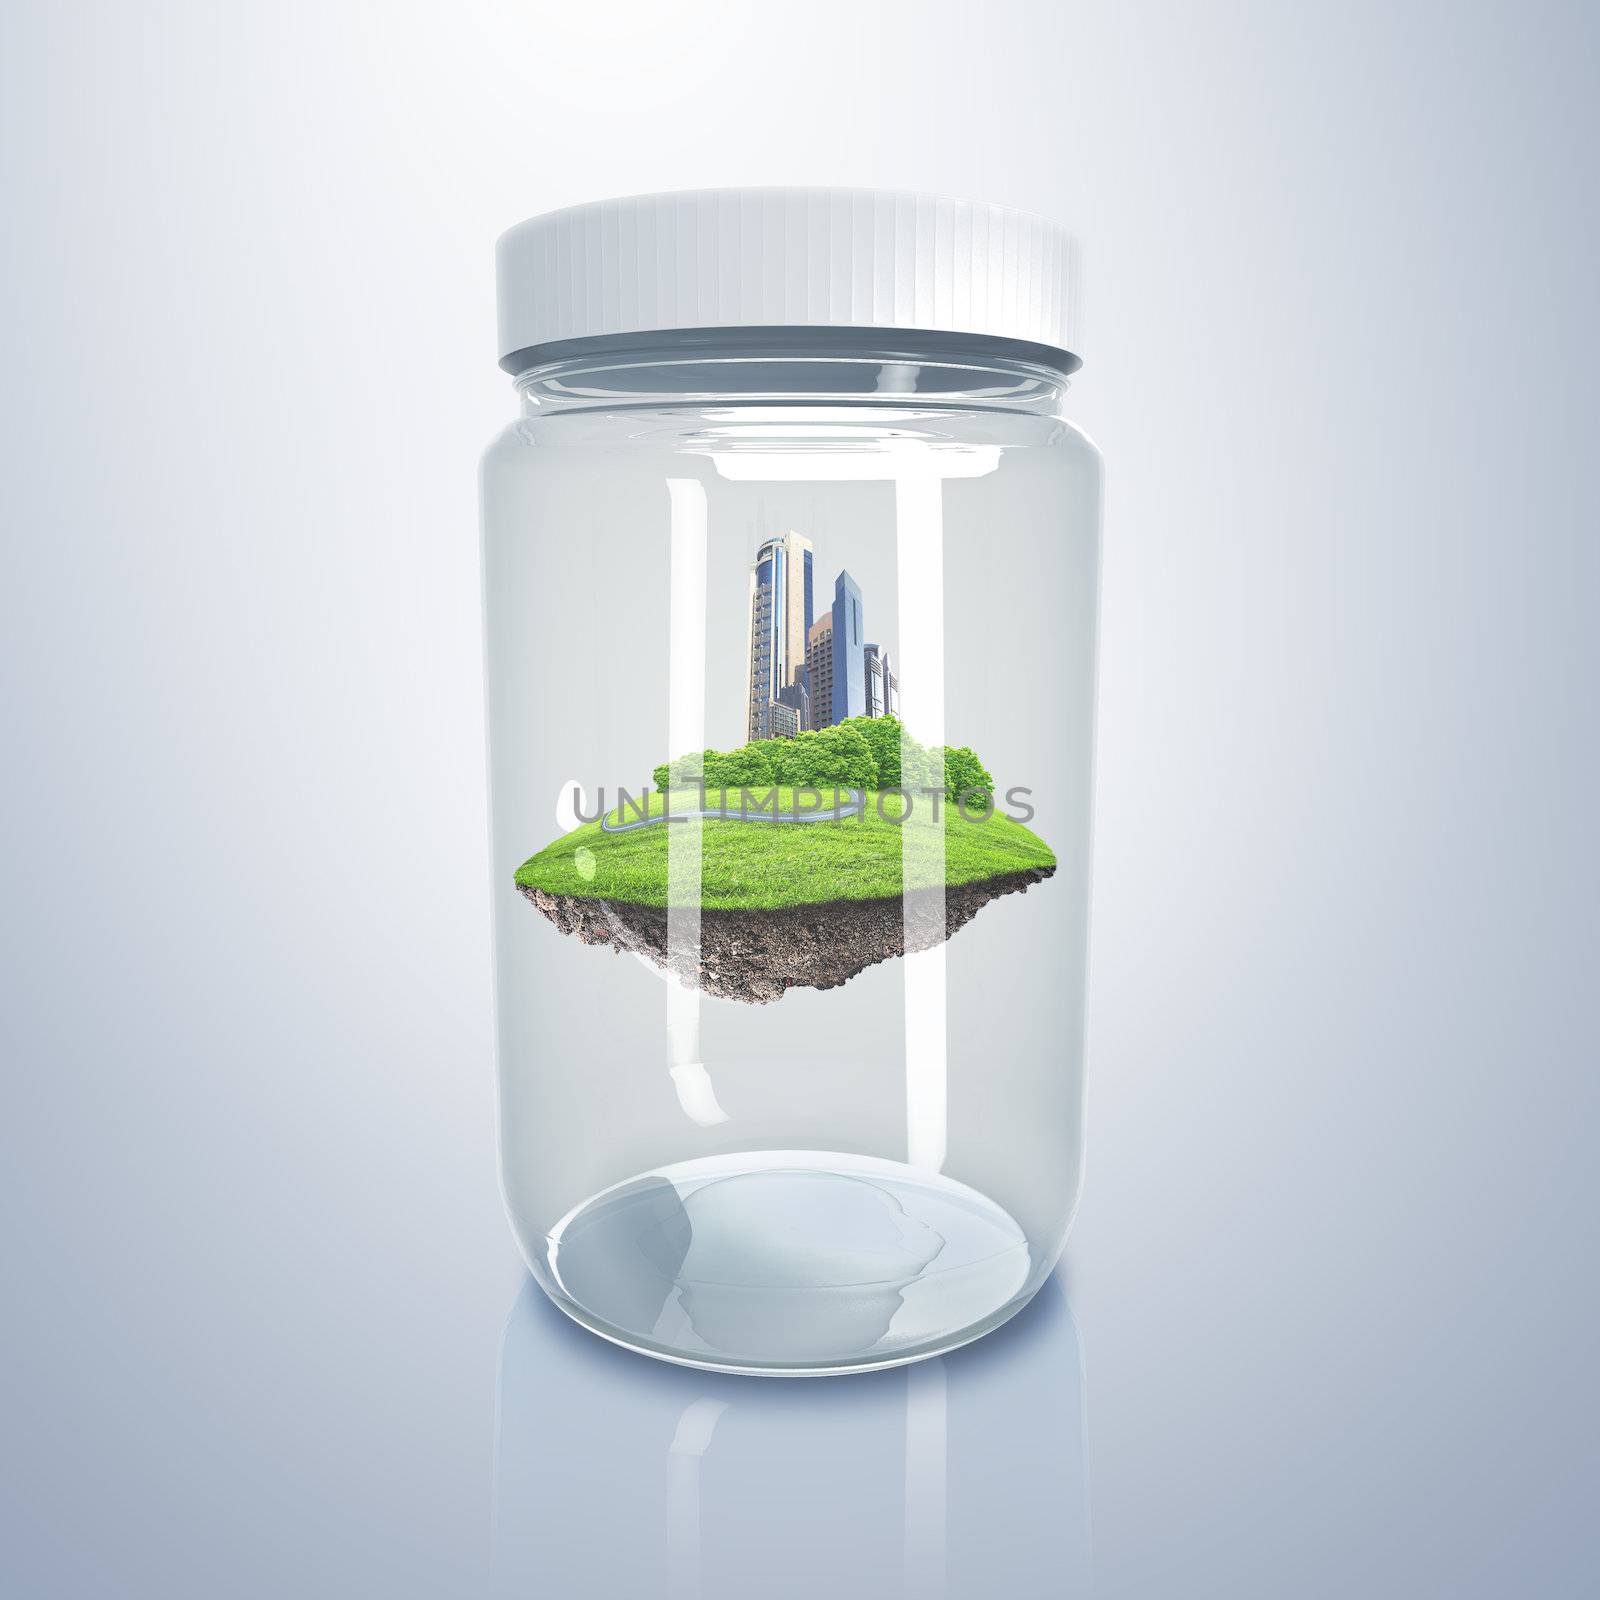 City inside a glass jar by sergey_nivens